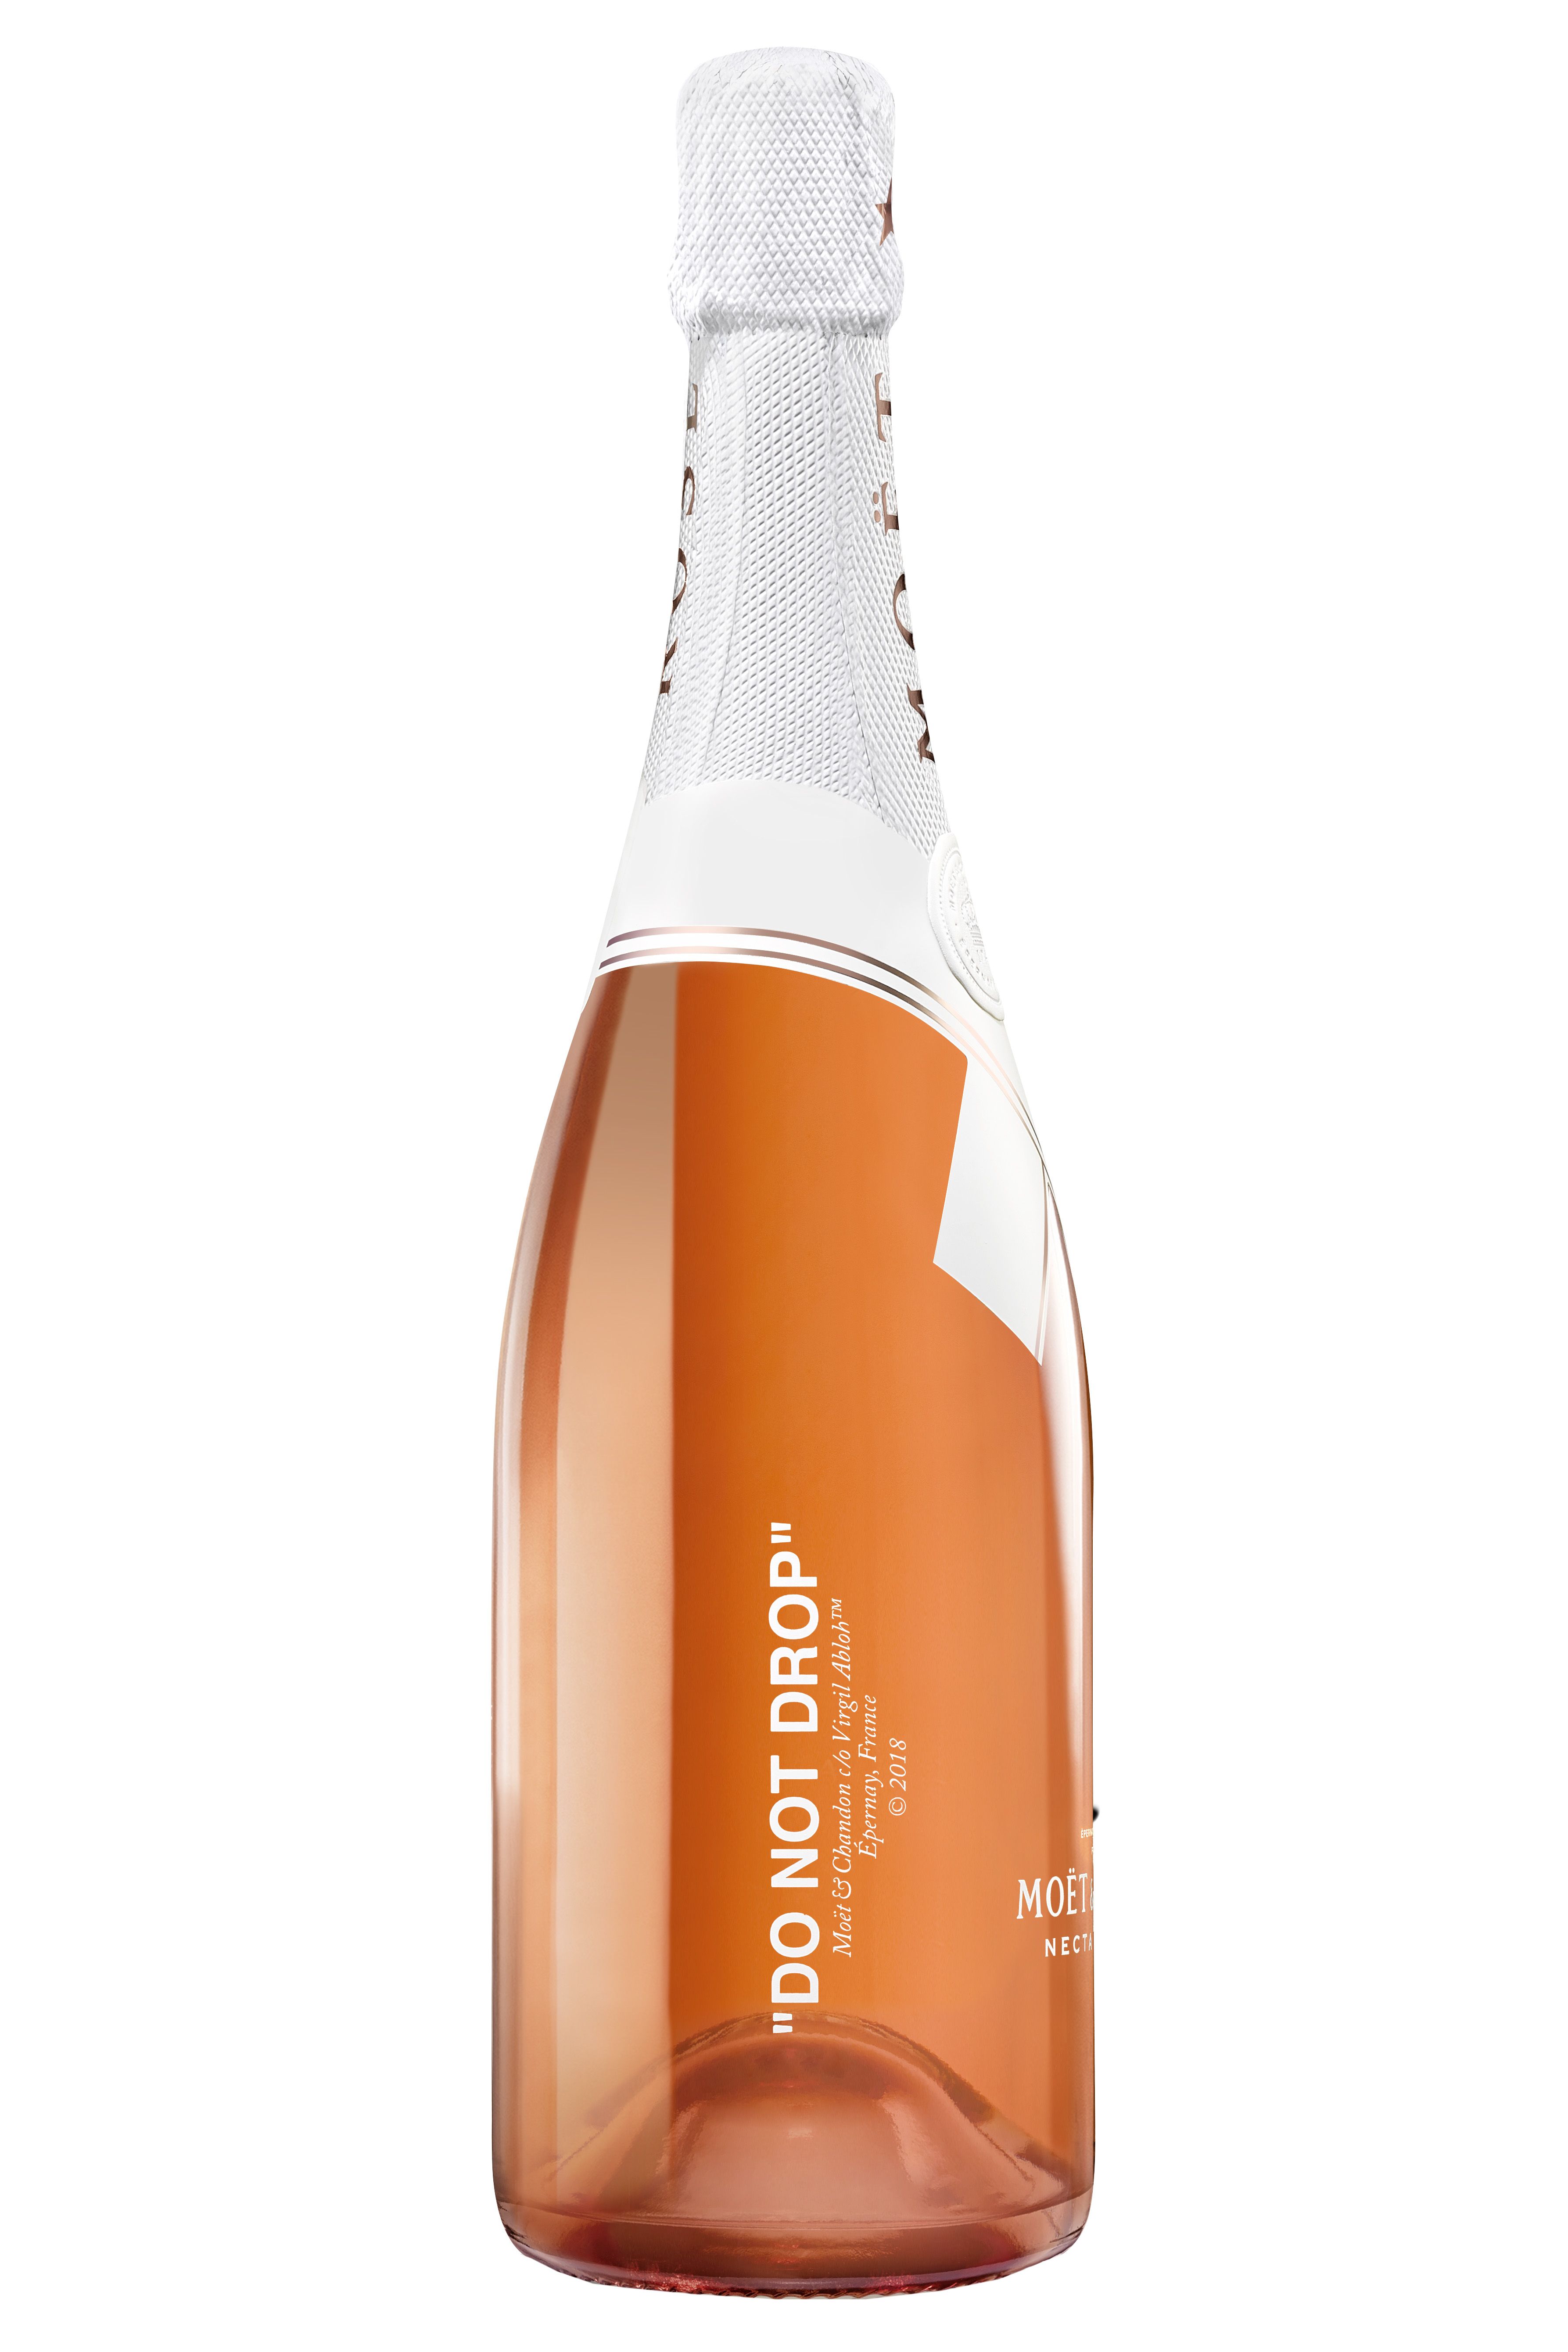 Virgil Abloh designs Champagne bottle for Moët & Chandon